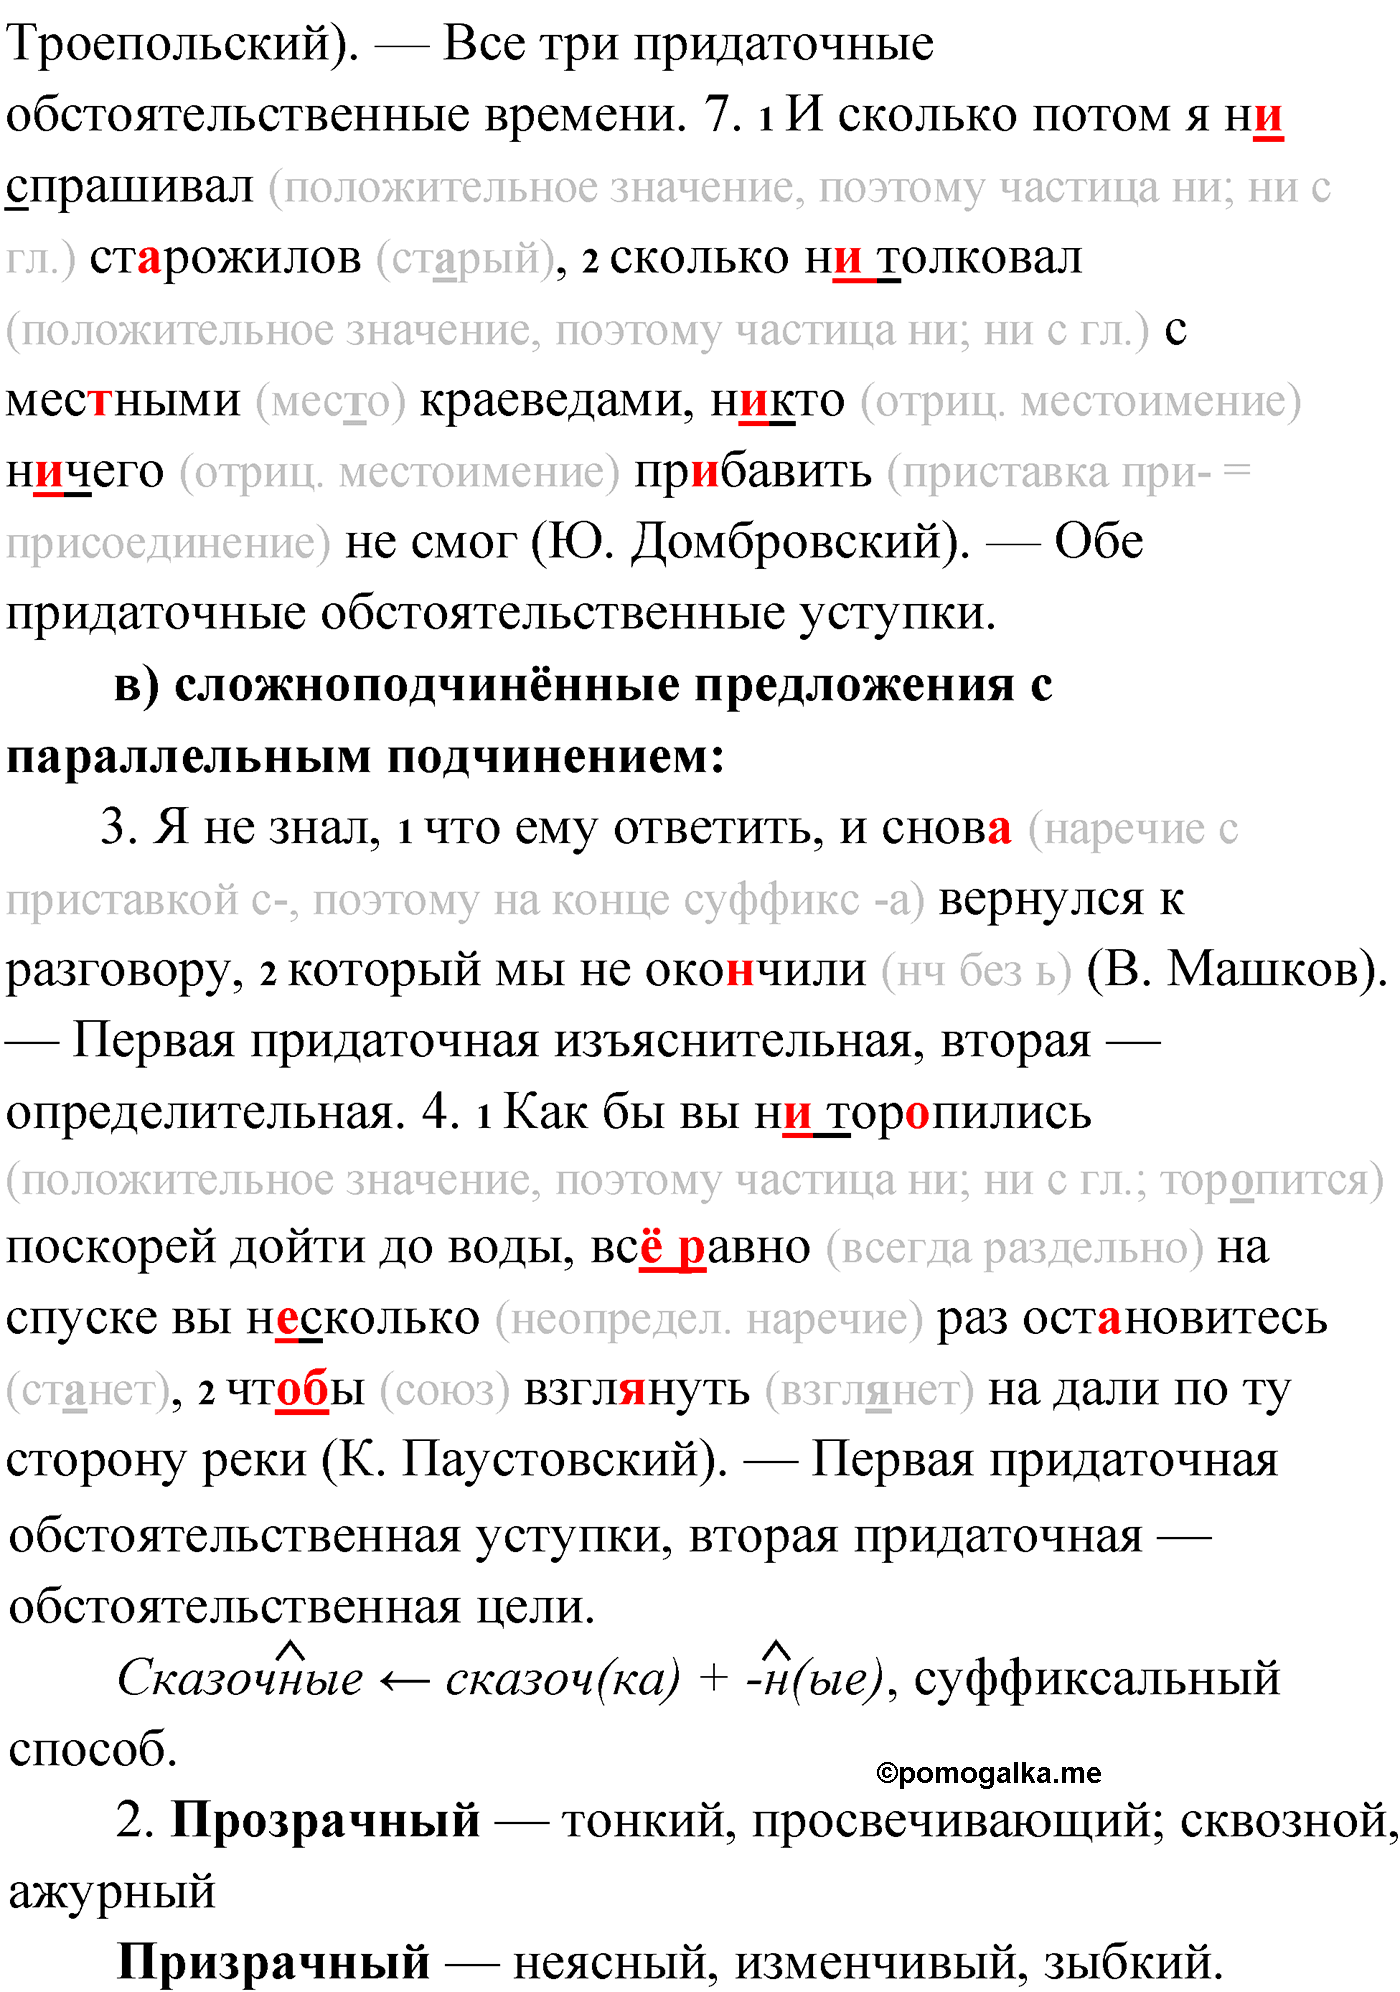 упражнение №249 русский язык 9 класс Мурина 2019 год